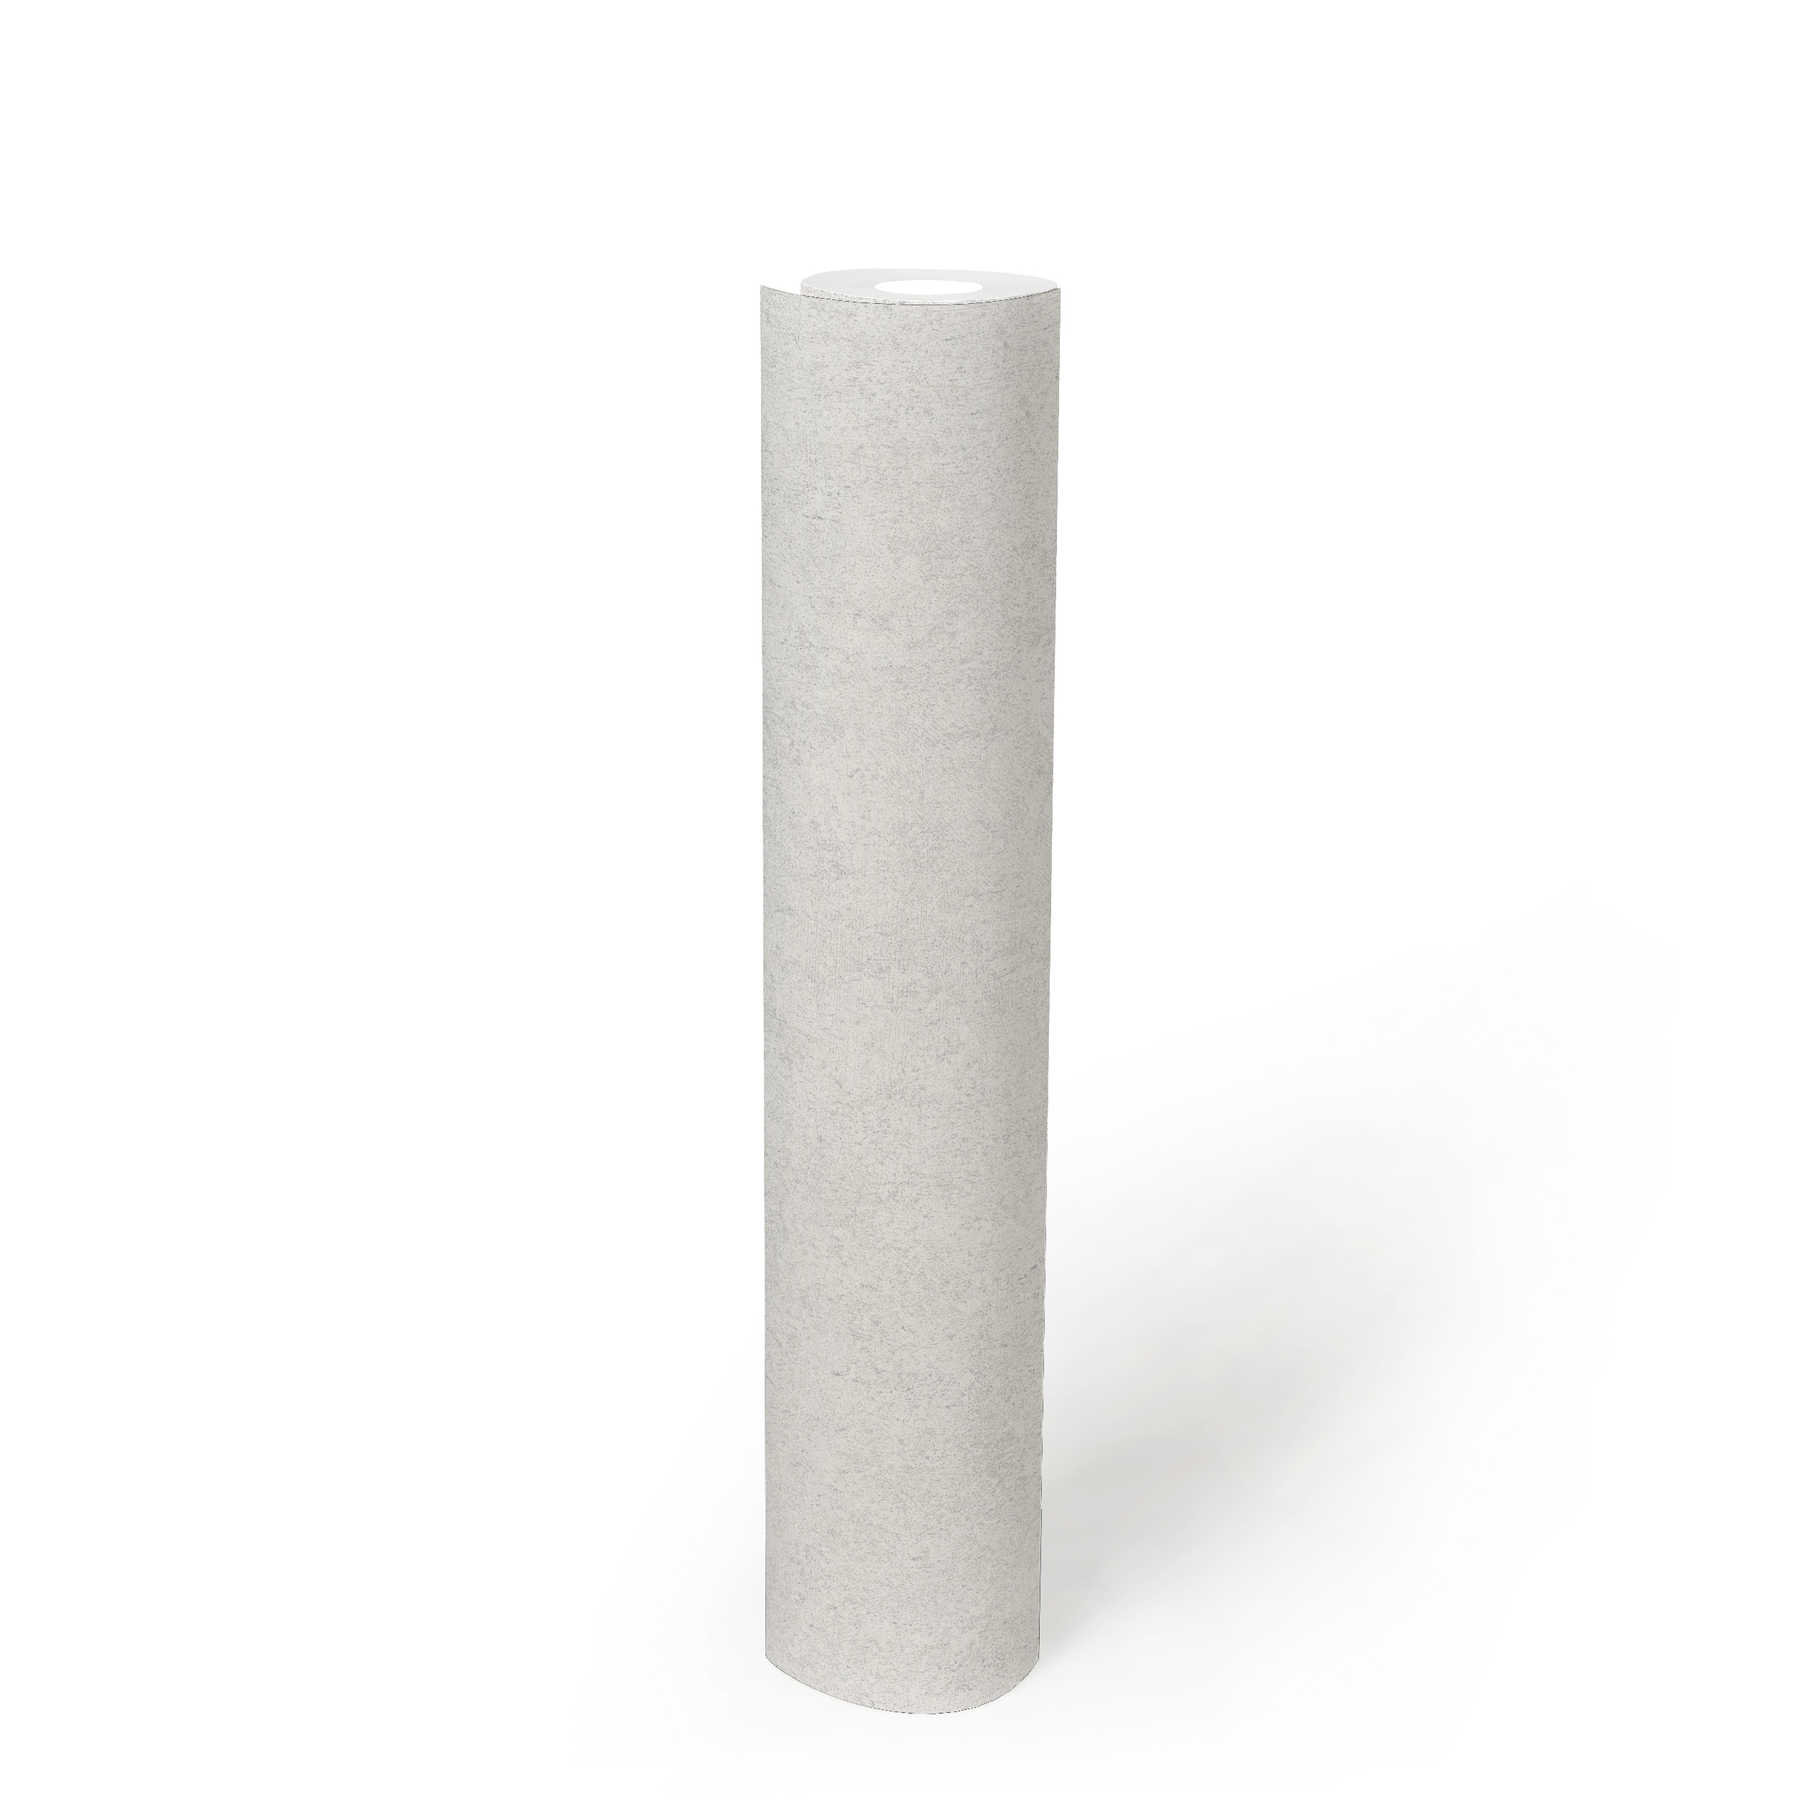             Behang grijs wit met natuursteen look structuur
        